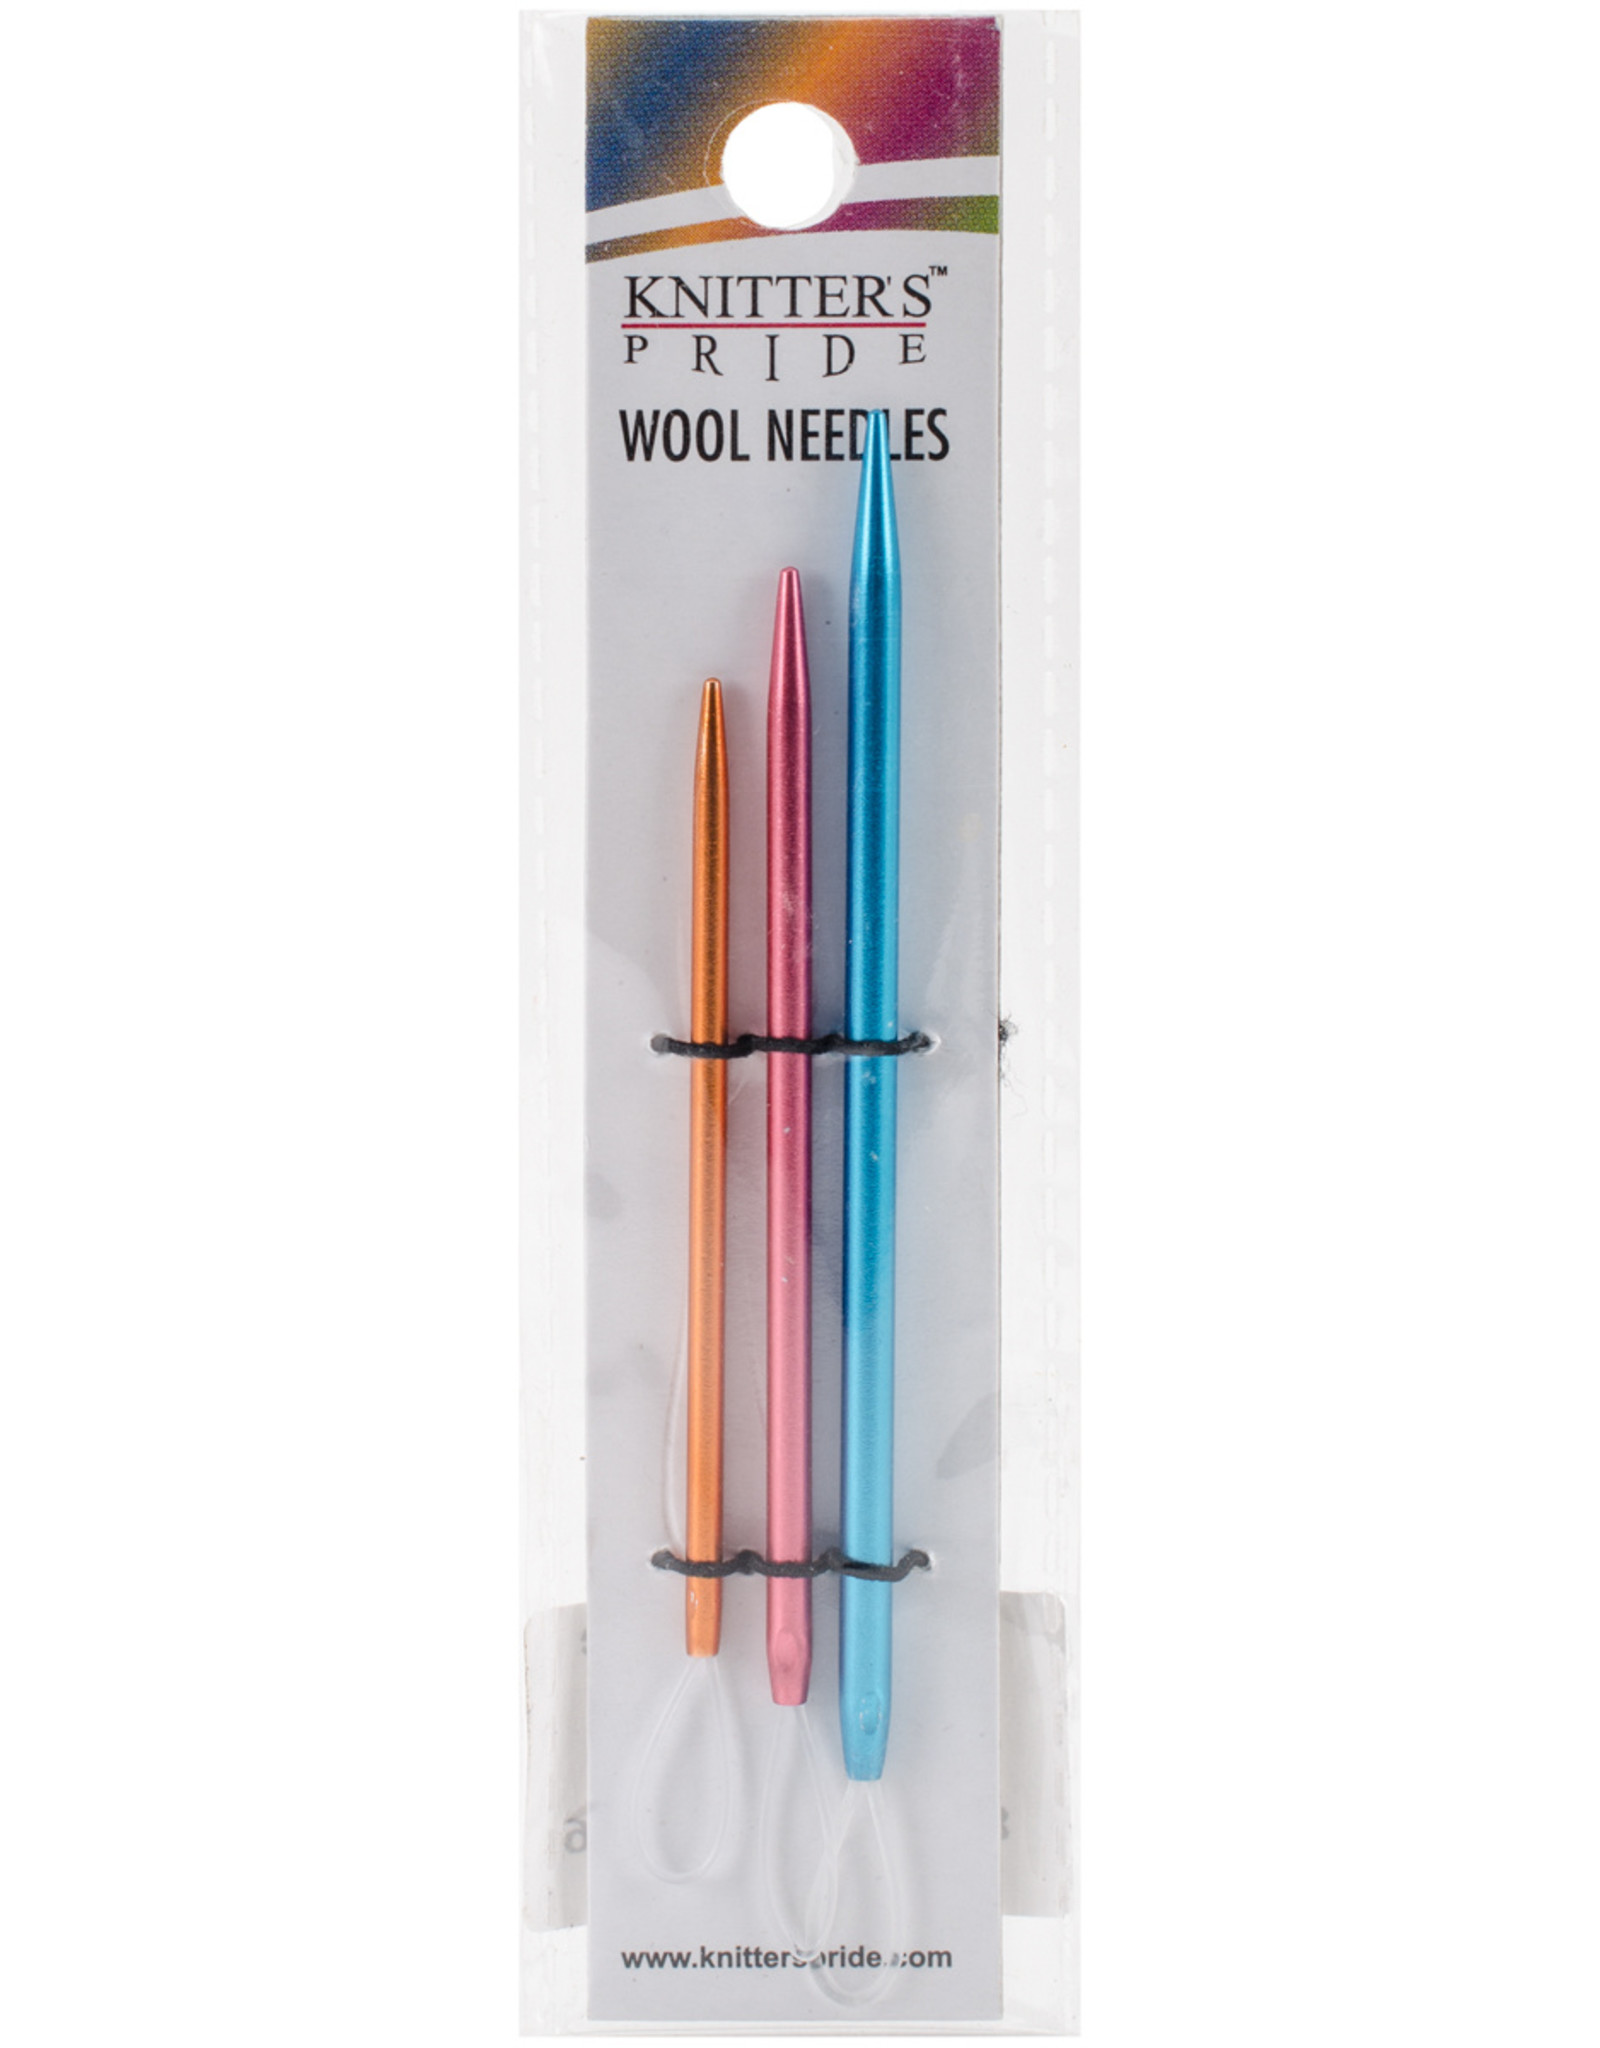 Knitters Pride KP Wool Needles